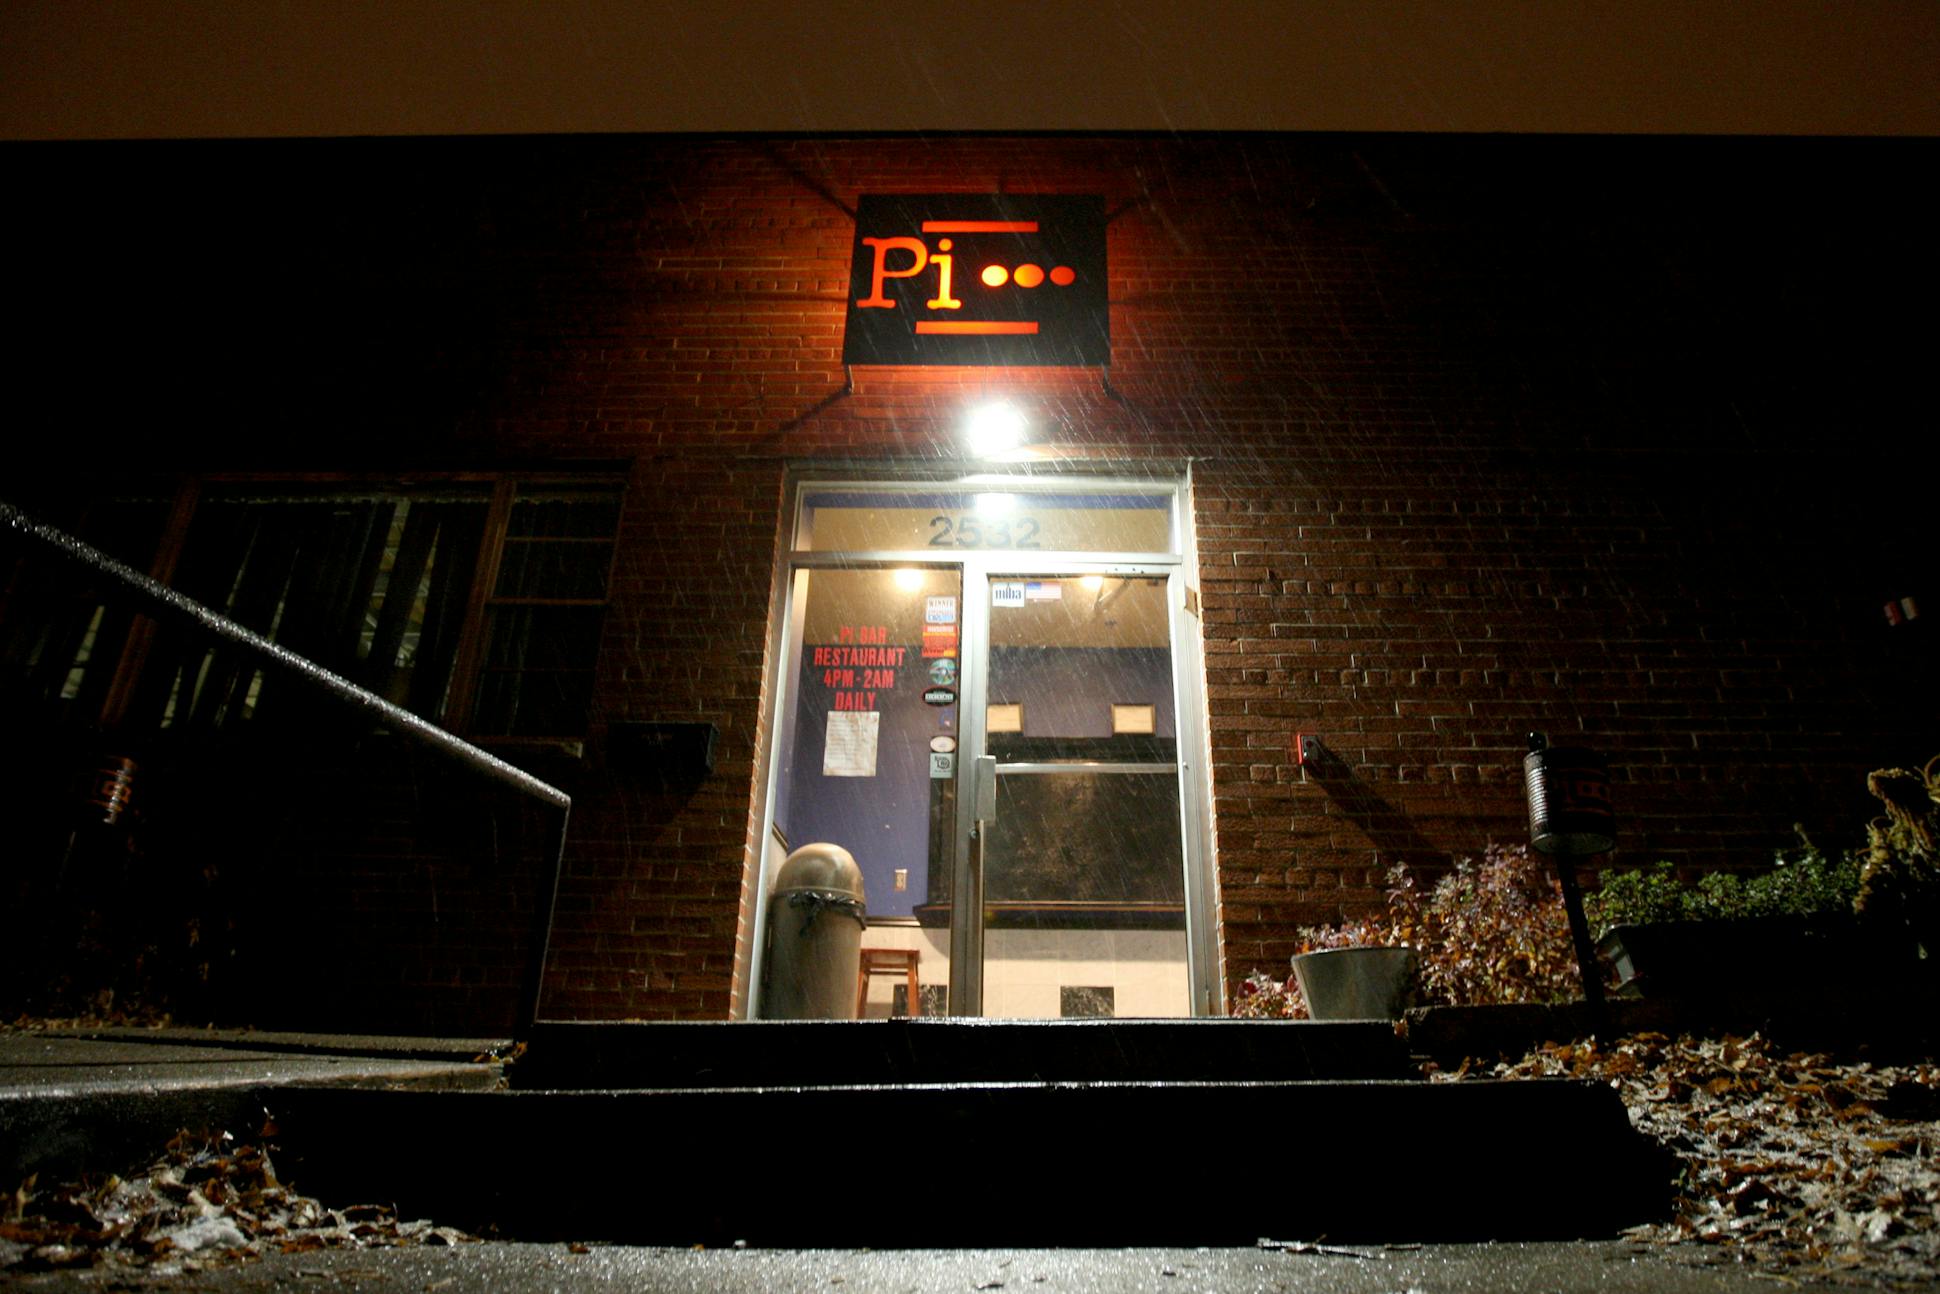 Pi Bar closed in 2008.